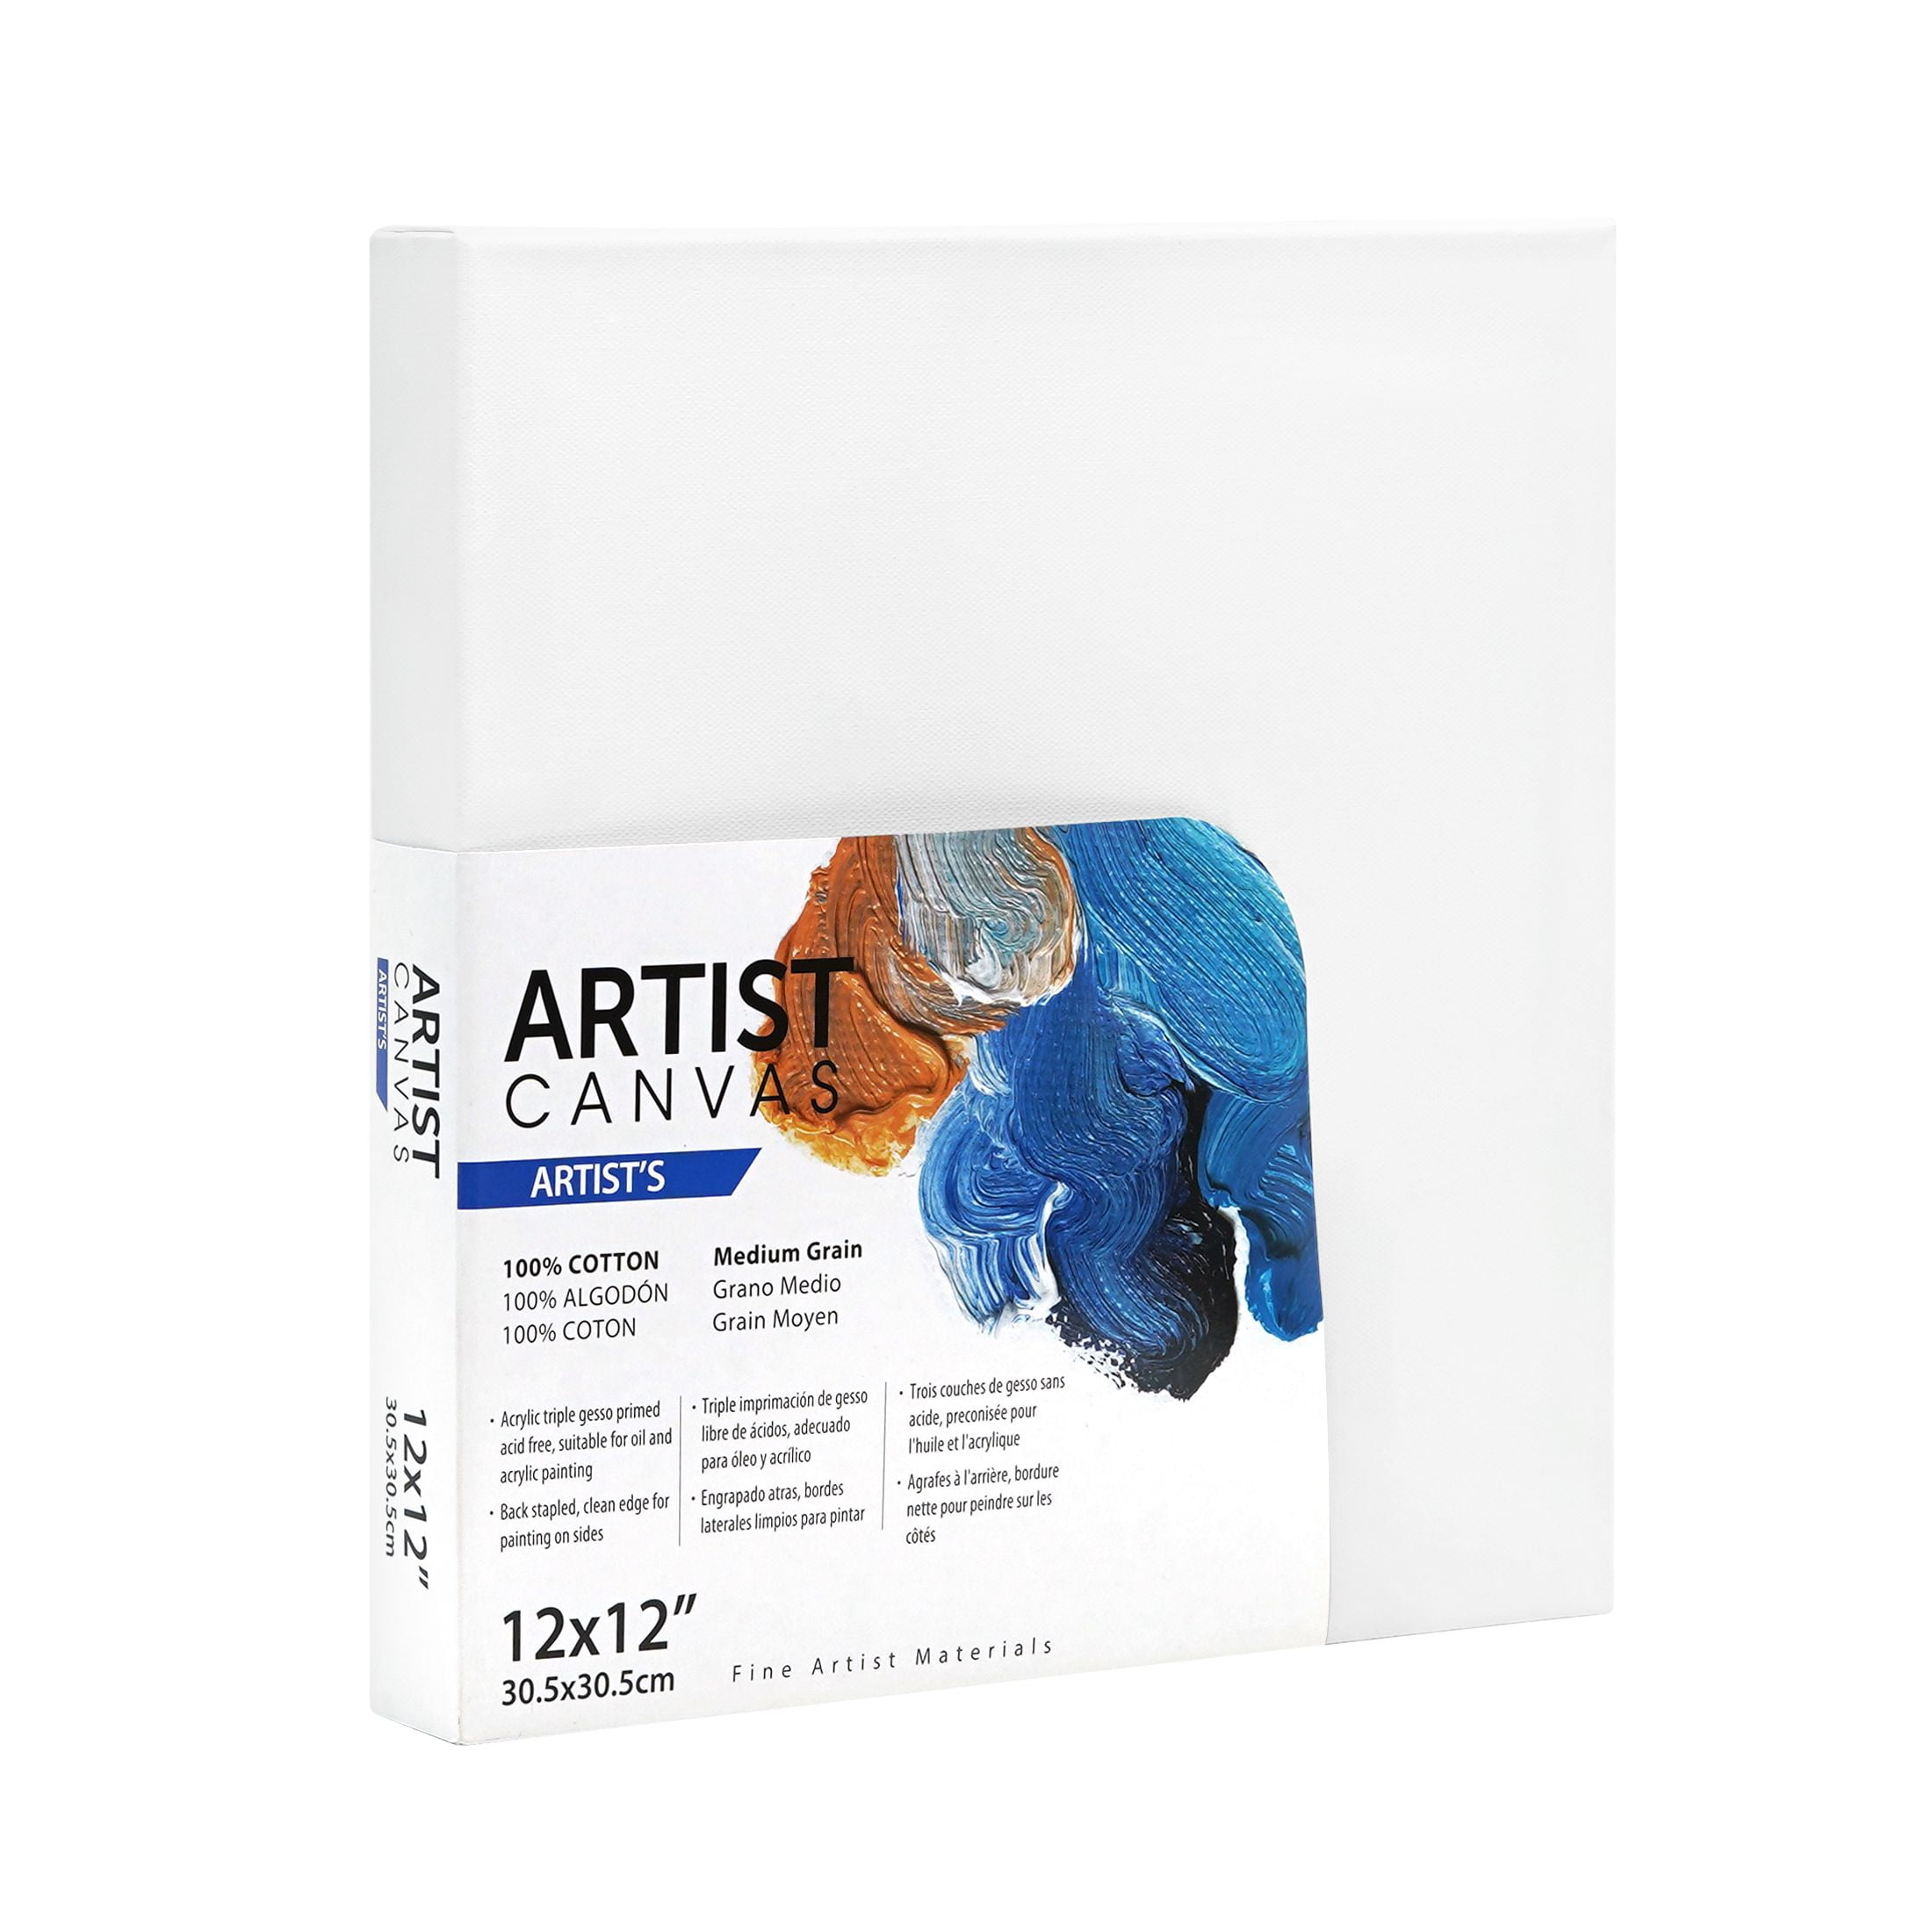 Artist 3D Stretched Canvas, 100% Cotton Acid Free White Canvas, 12"X12", 1 Piece